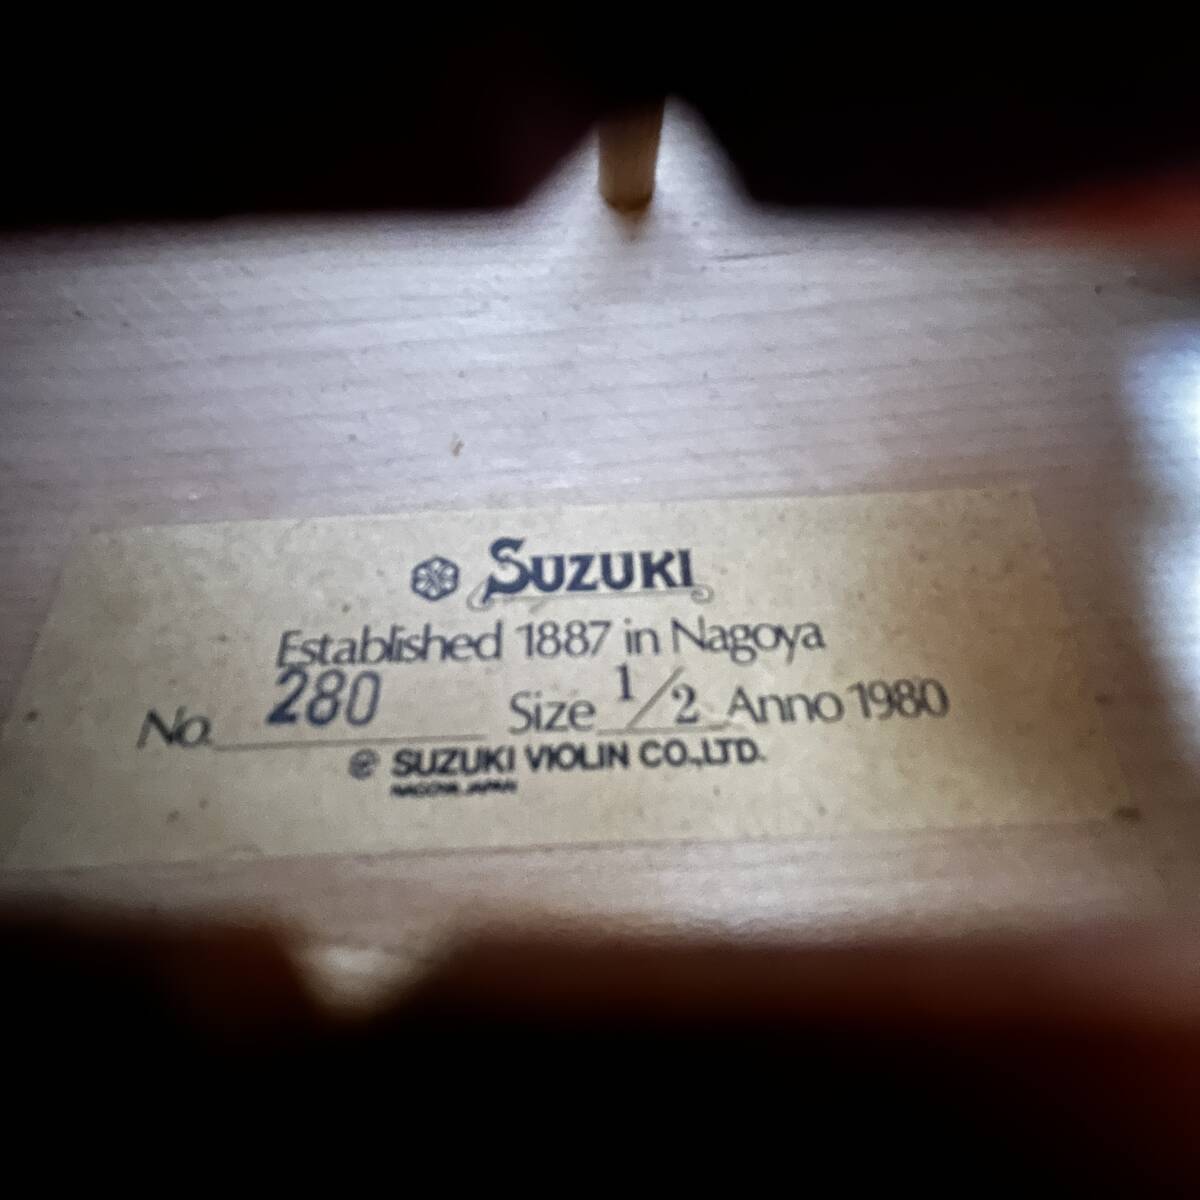 鈴木バイオリン No.280 1/2 Anno1980 ハードケース付き SUZUKI製弓付属 弦楽器/120サイズ_画像3